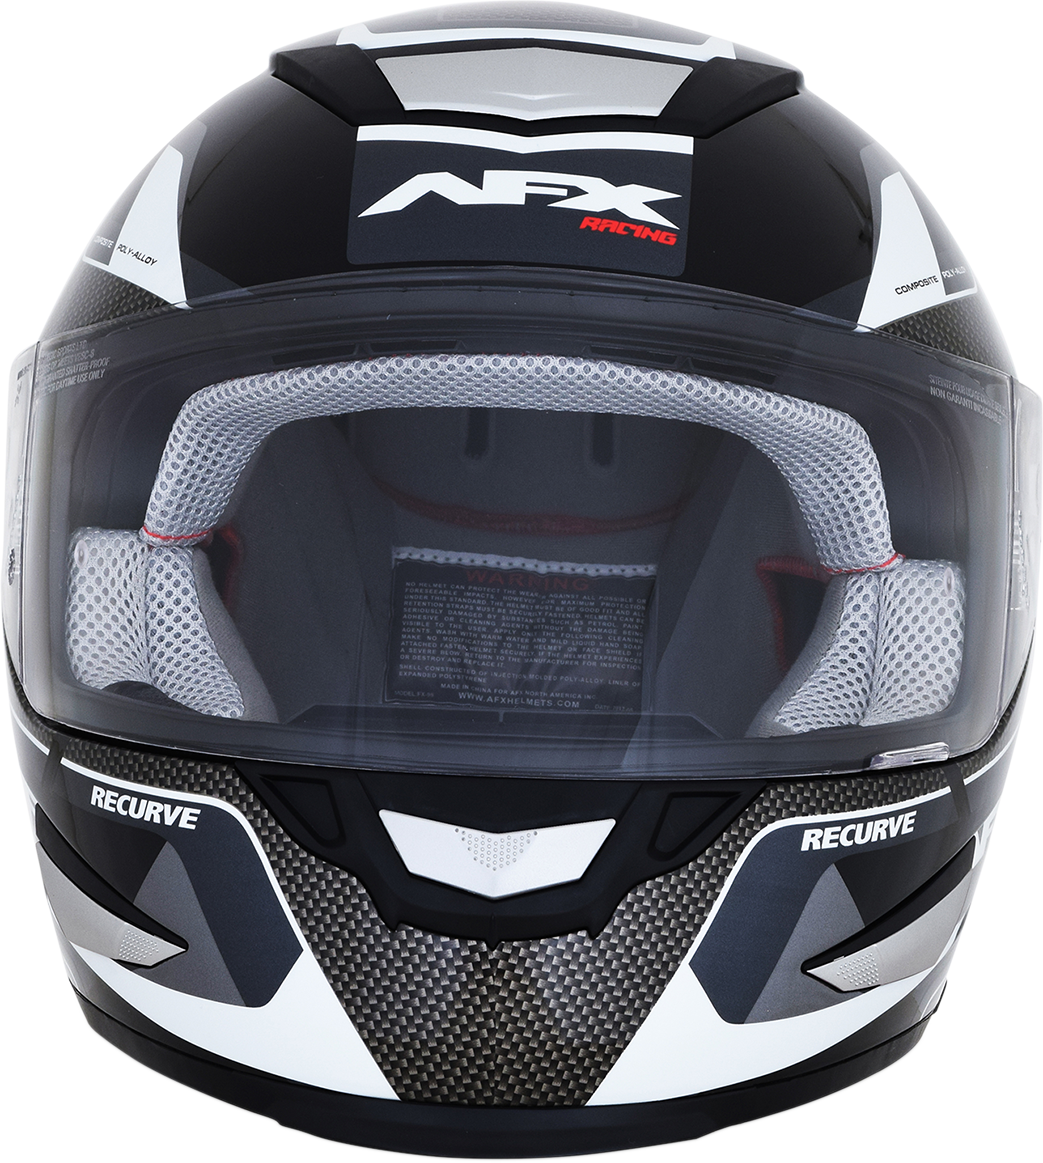 AFX FX-99 Helmet - Recurve - Black/White - XL 0101-11119